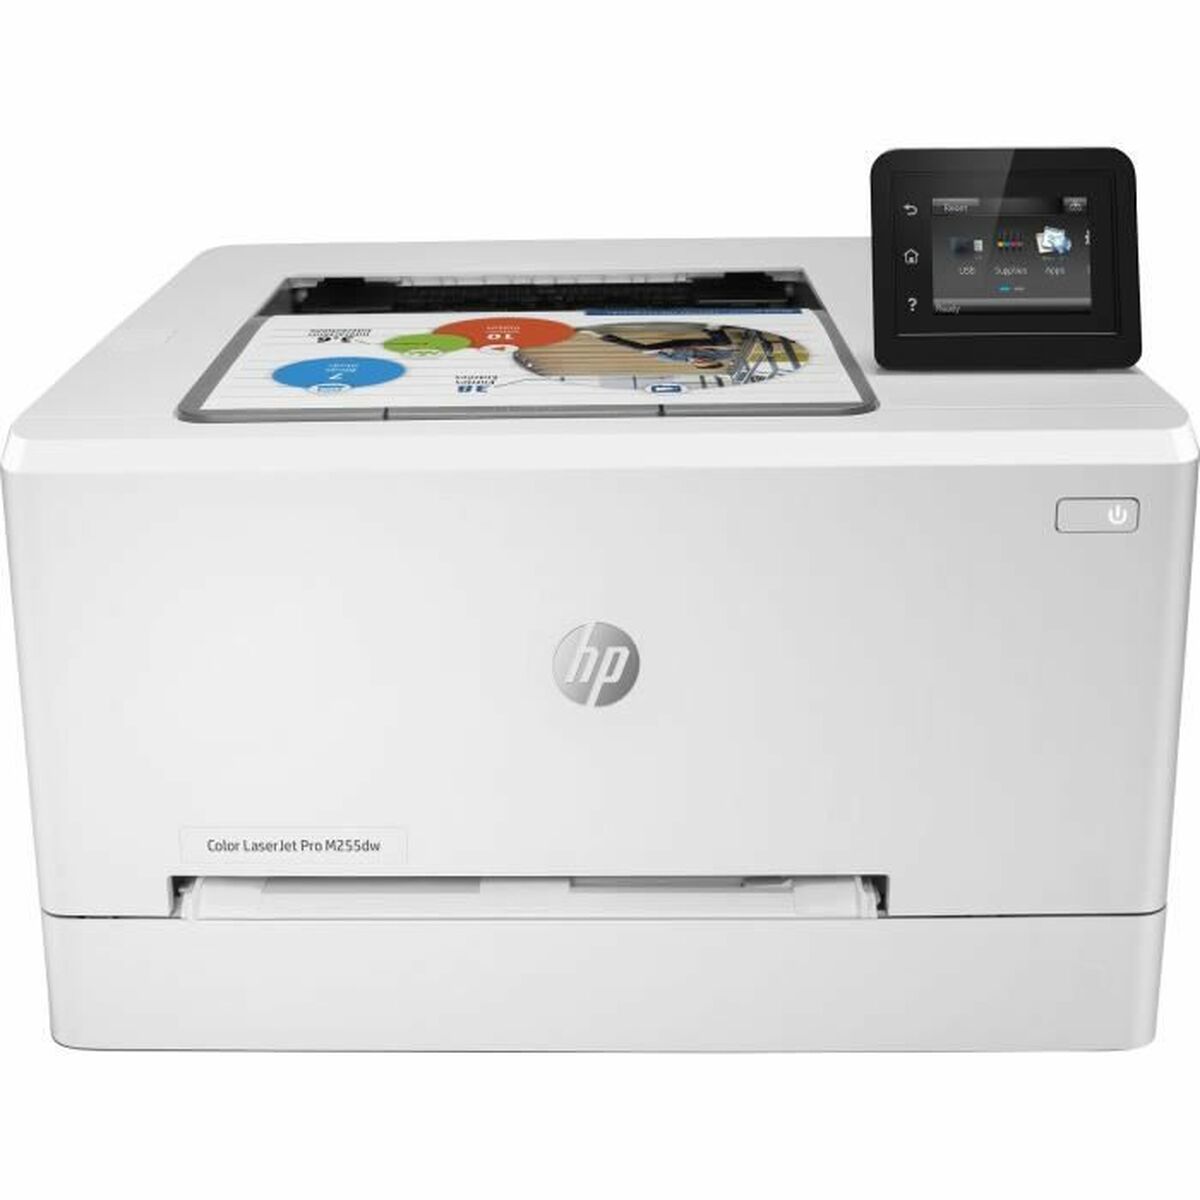 Laserdrucker HP Color LaserJet Pro M255dw